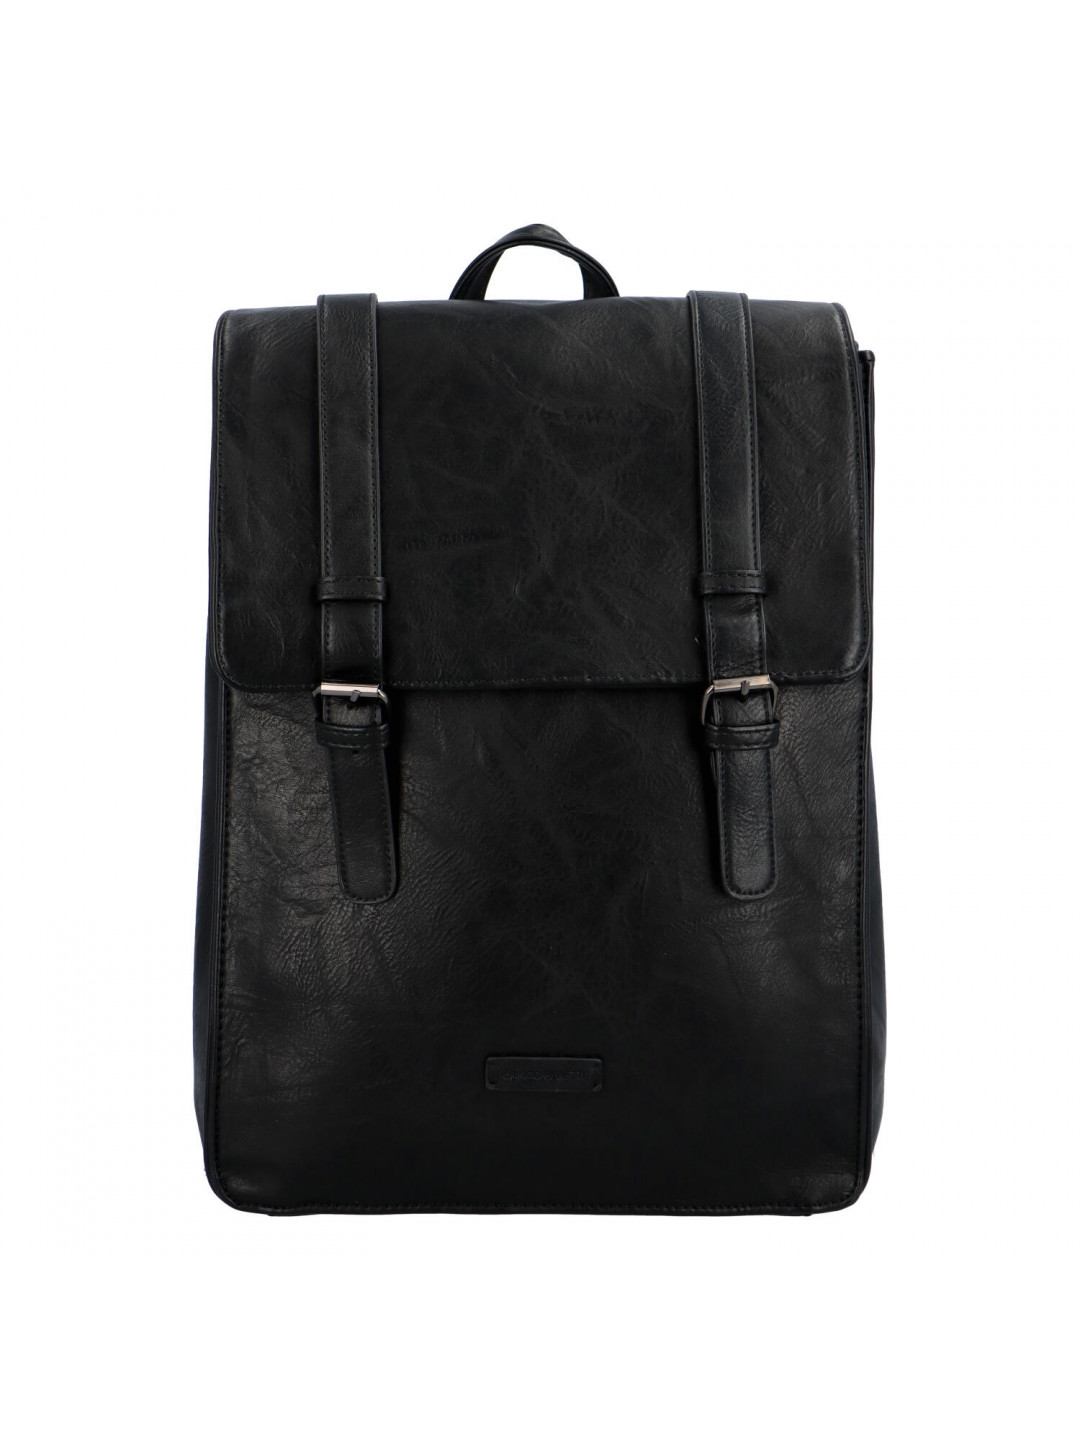 Velký stylový batoh černý – Enrico Benetti Kiwin